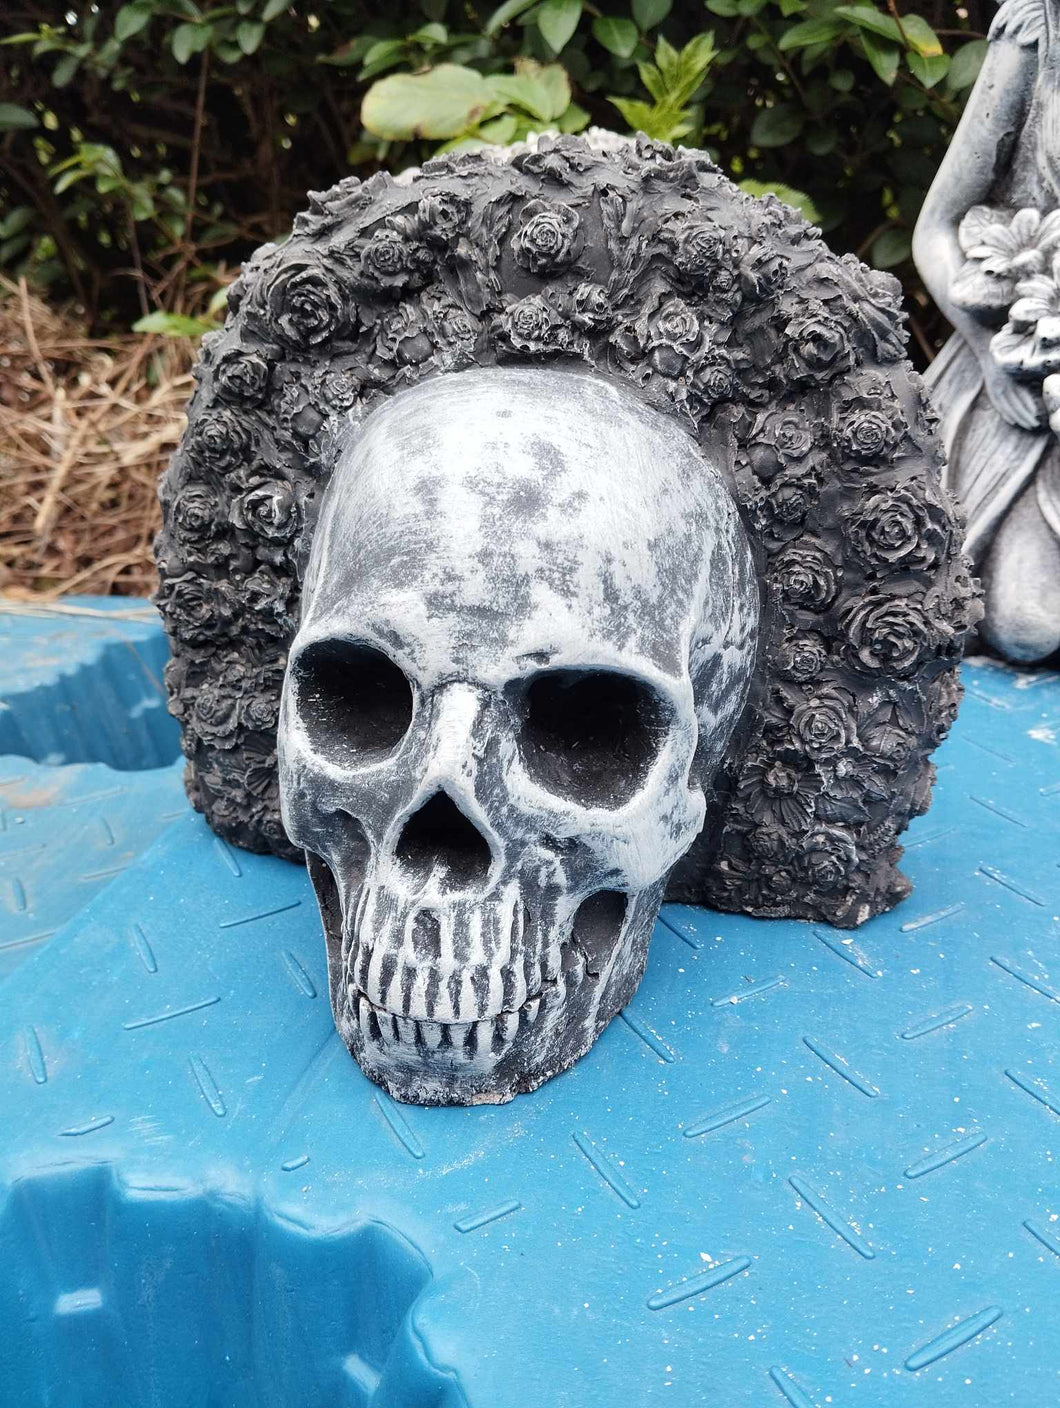 concrete skull day of the dead dia de muertos garden ornament art stone statue